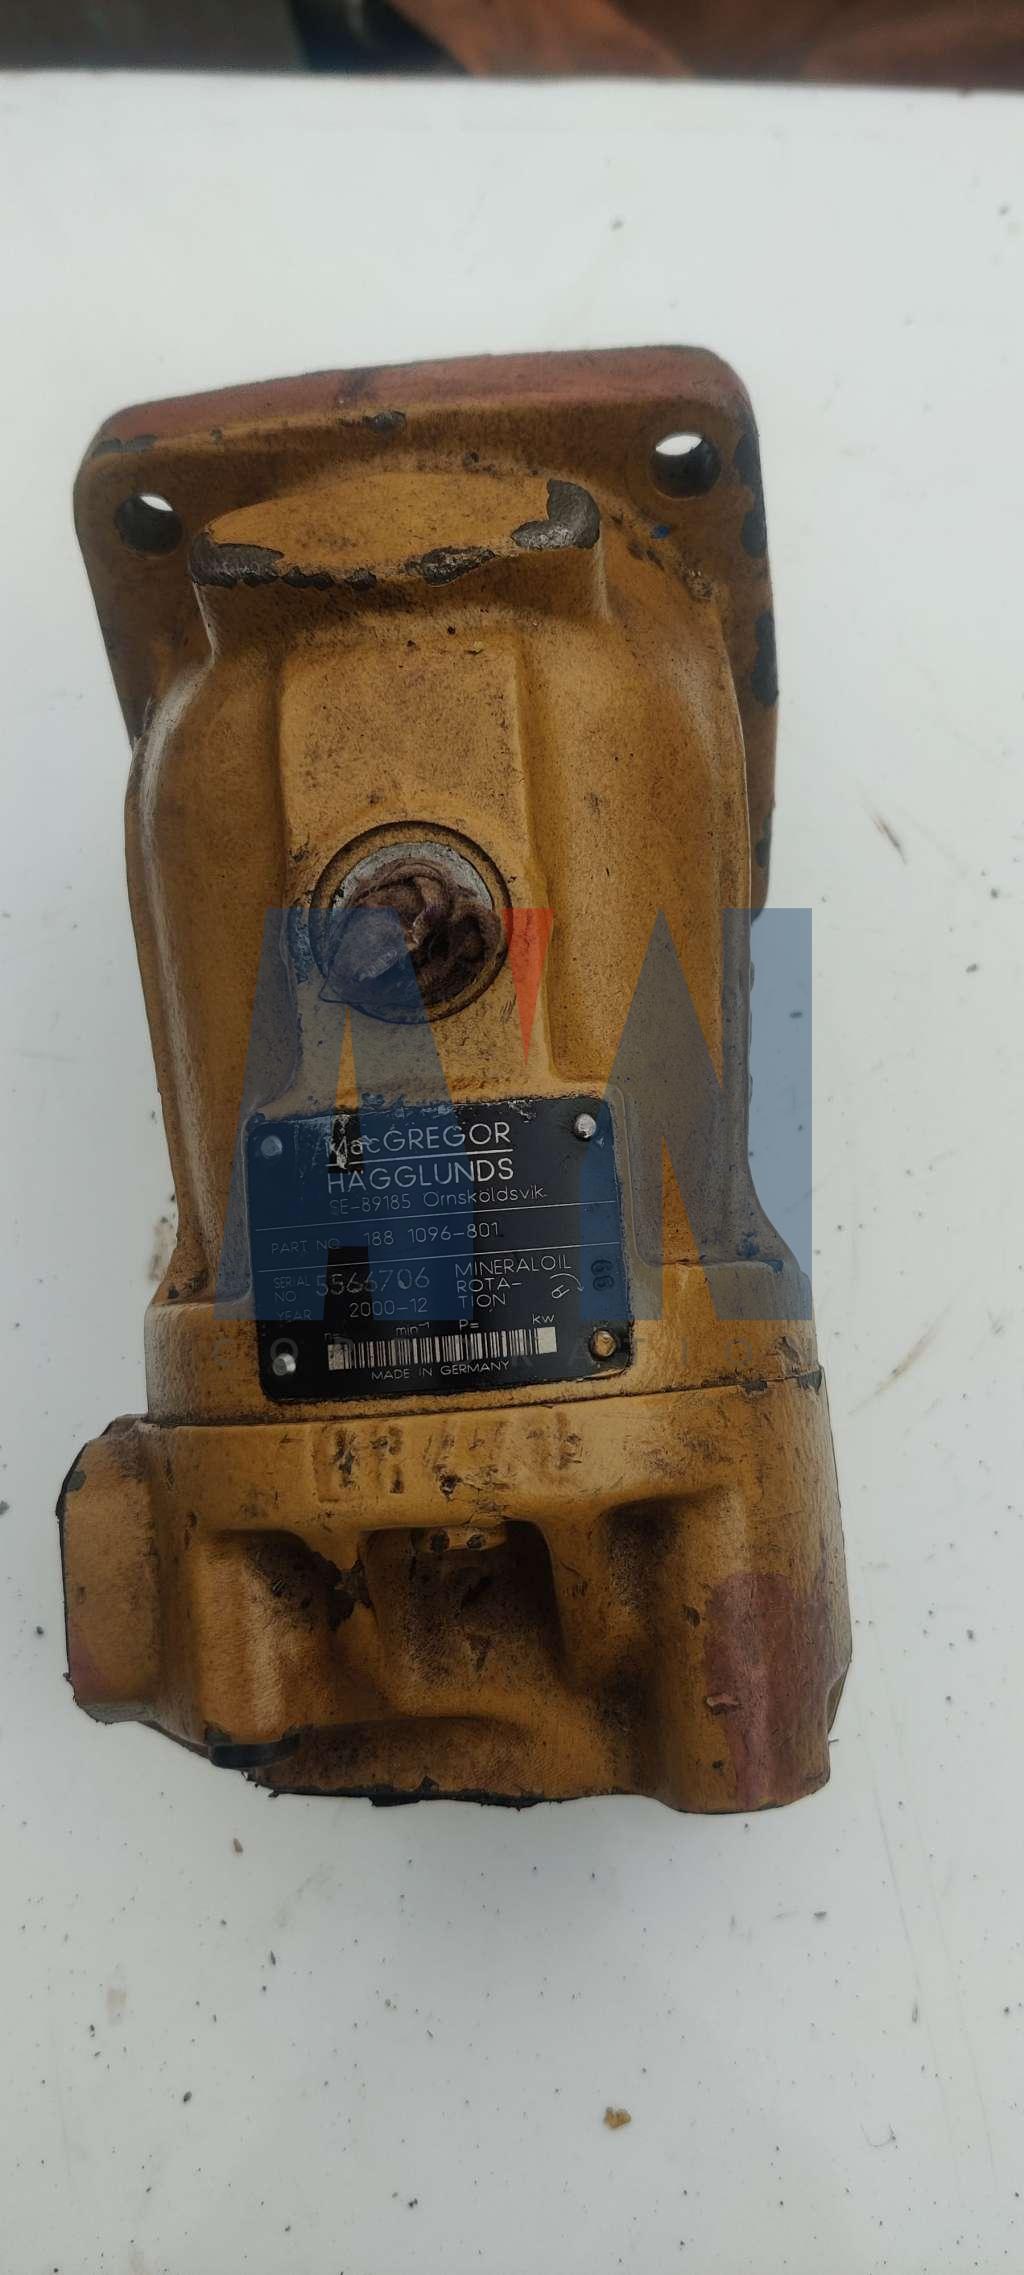 MacGREGOR 188 1096-801 Hydraulic Pump